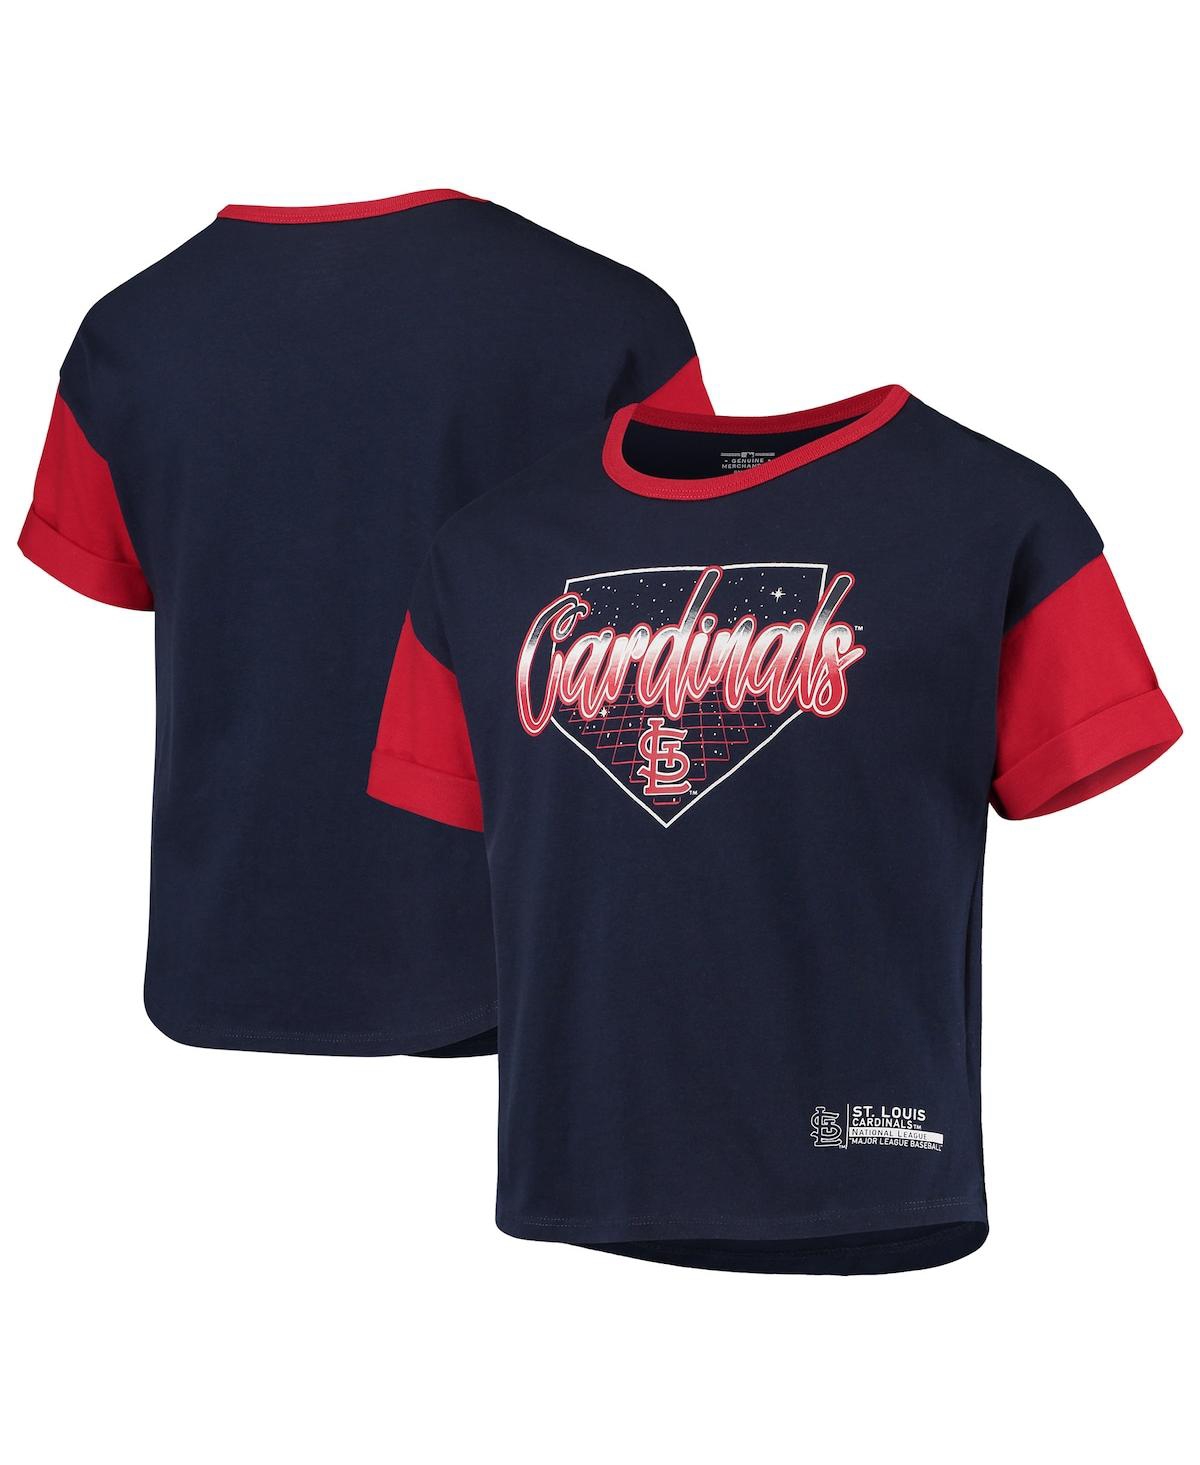 Outerstuff Kids' Big Girls Navy St. Louis Cardinals Bleachers T-shirt